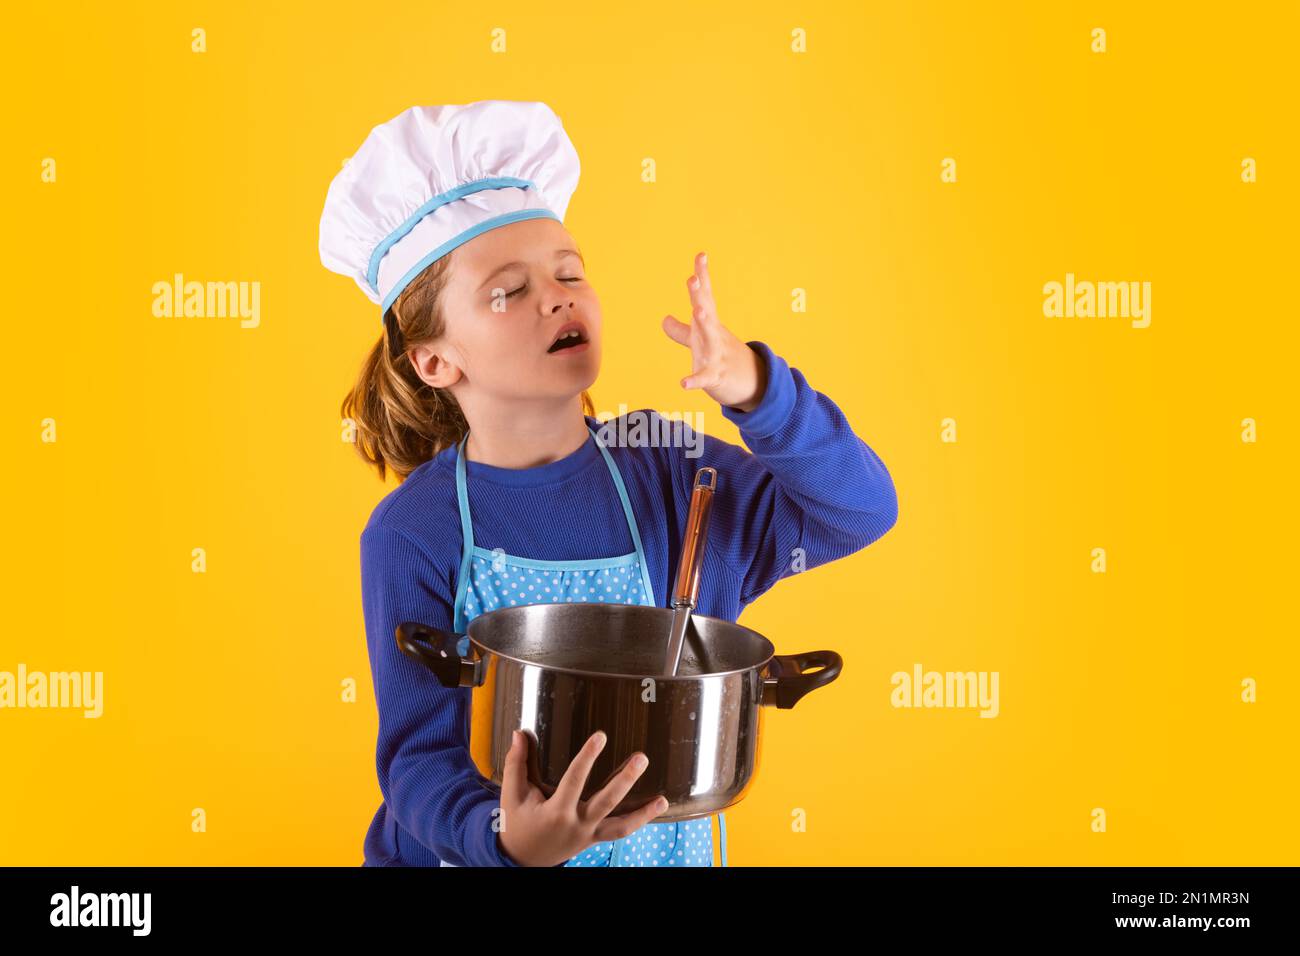 Cuisez les enfants avec une casserole et une louche. Enfant en